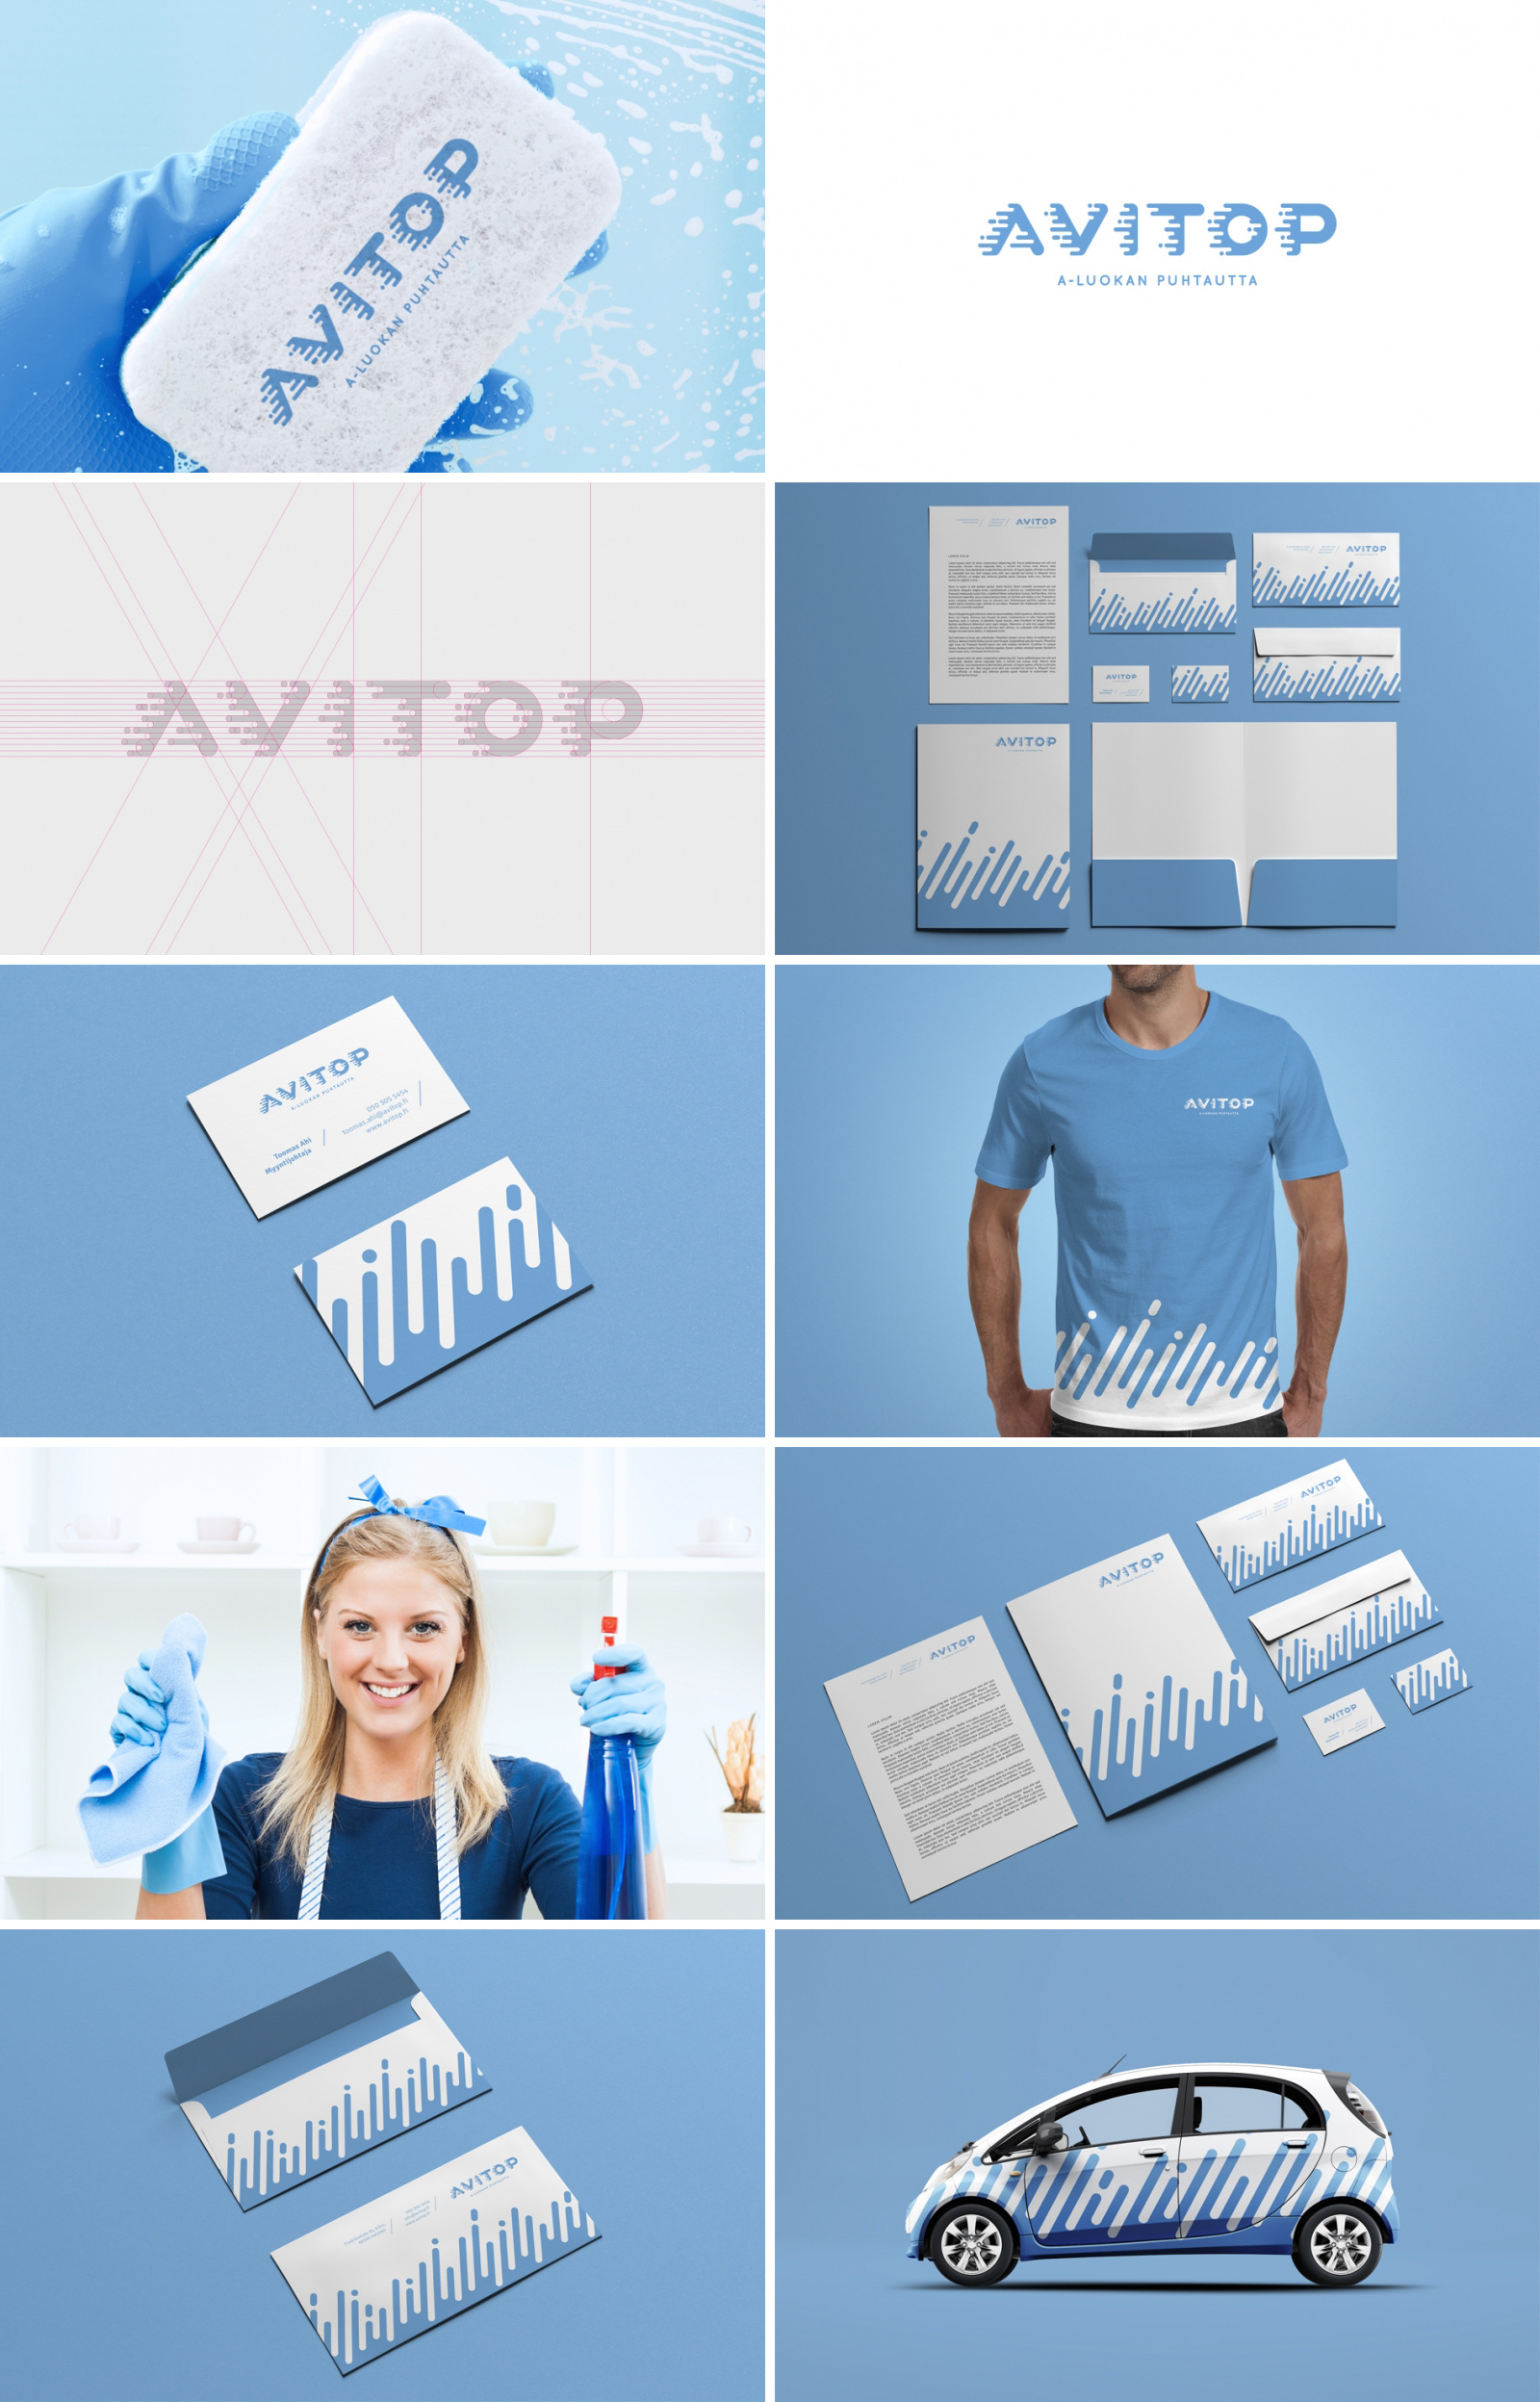 Фирменный стиль для клинингового бренда «Avitop»